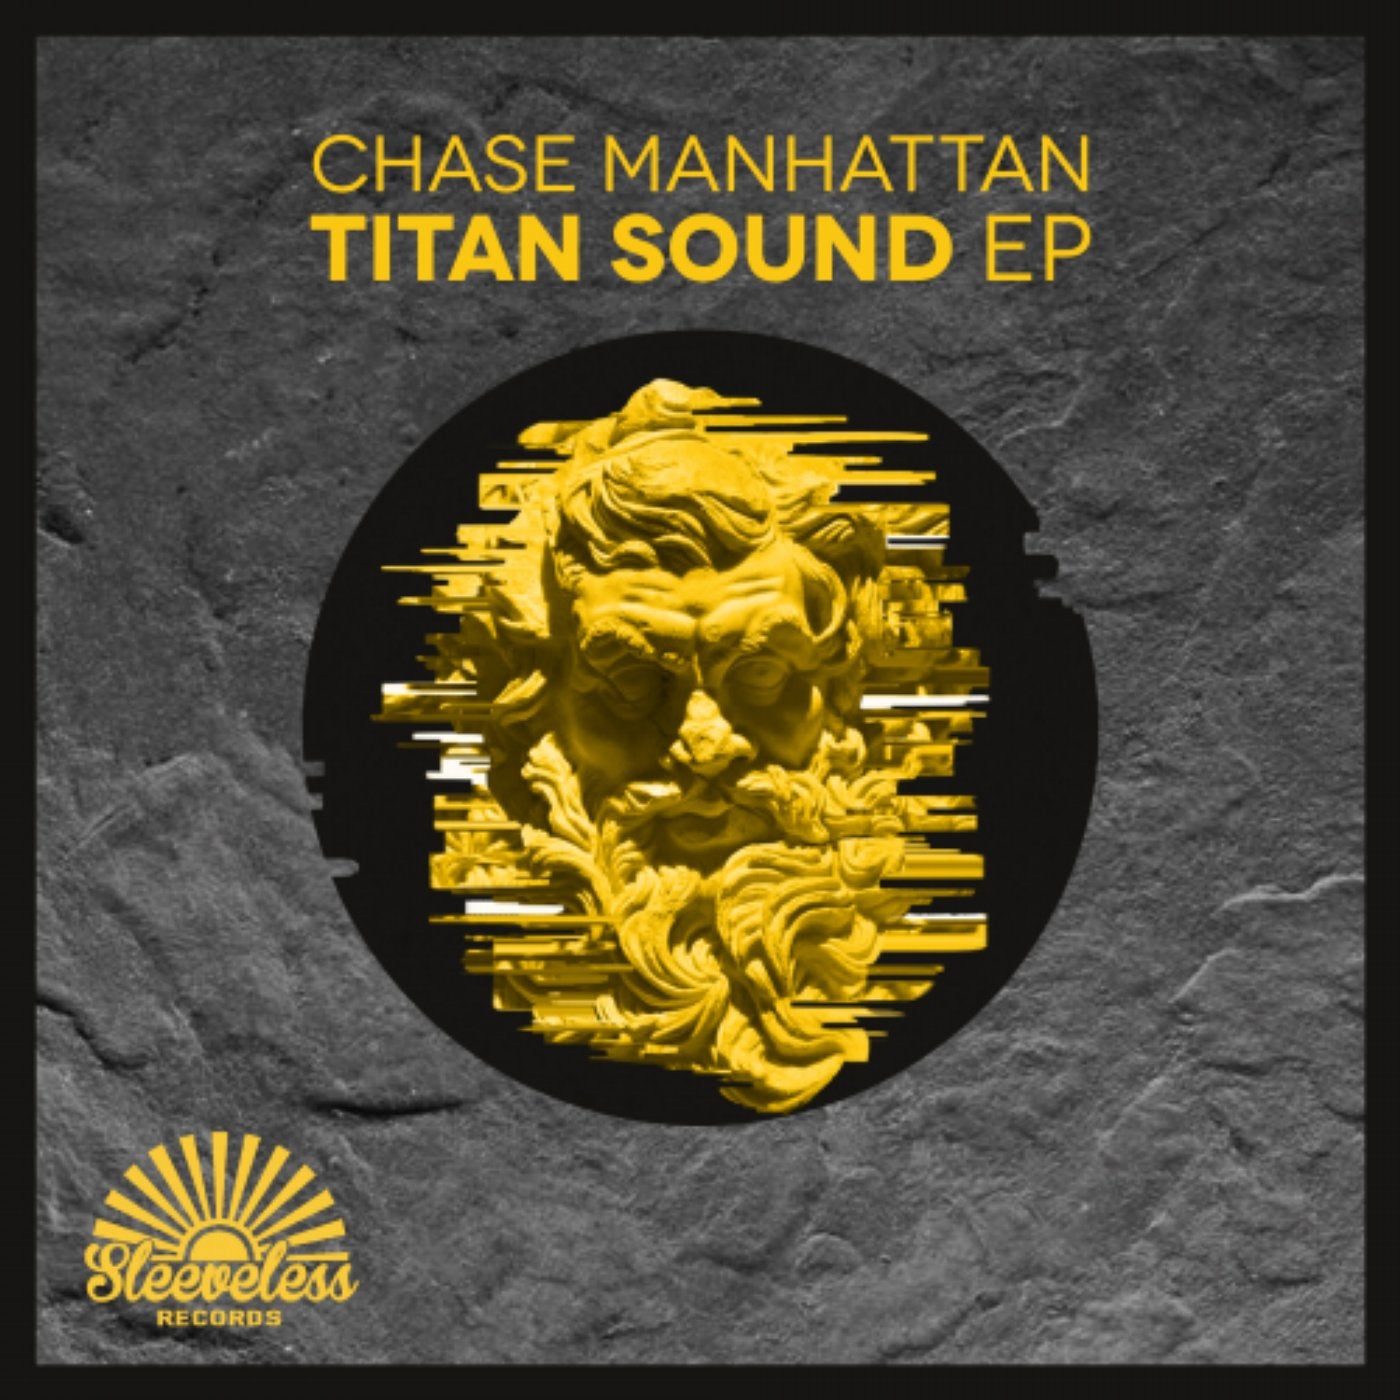 Titan Sound EP